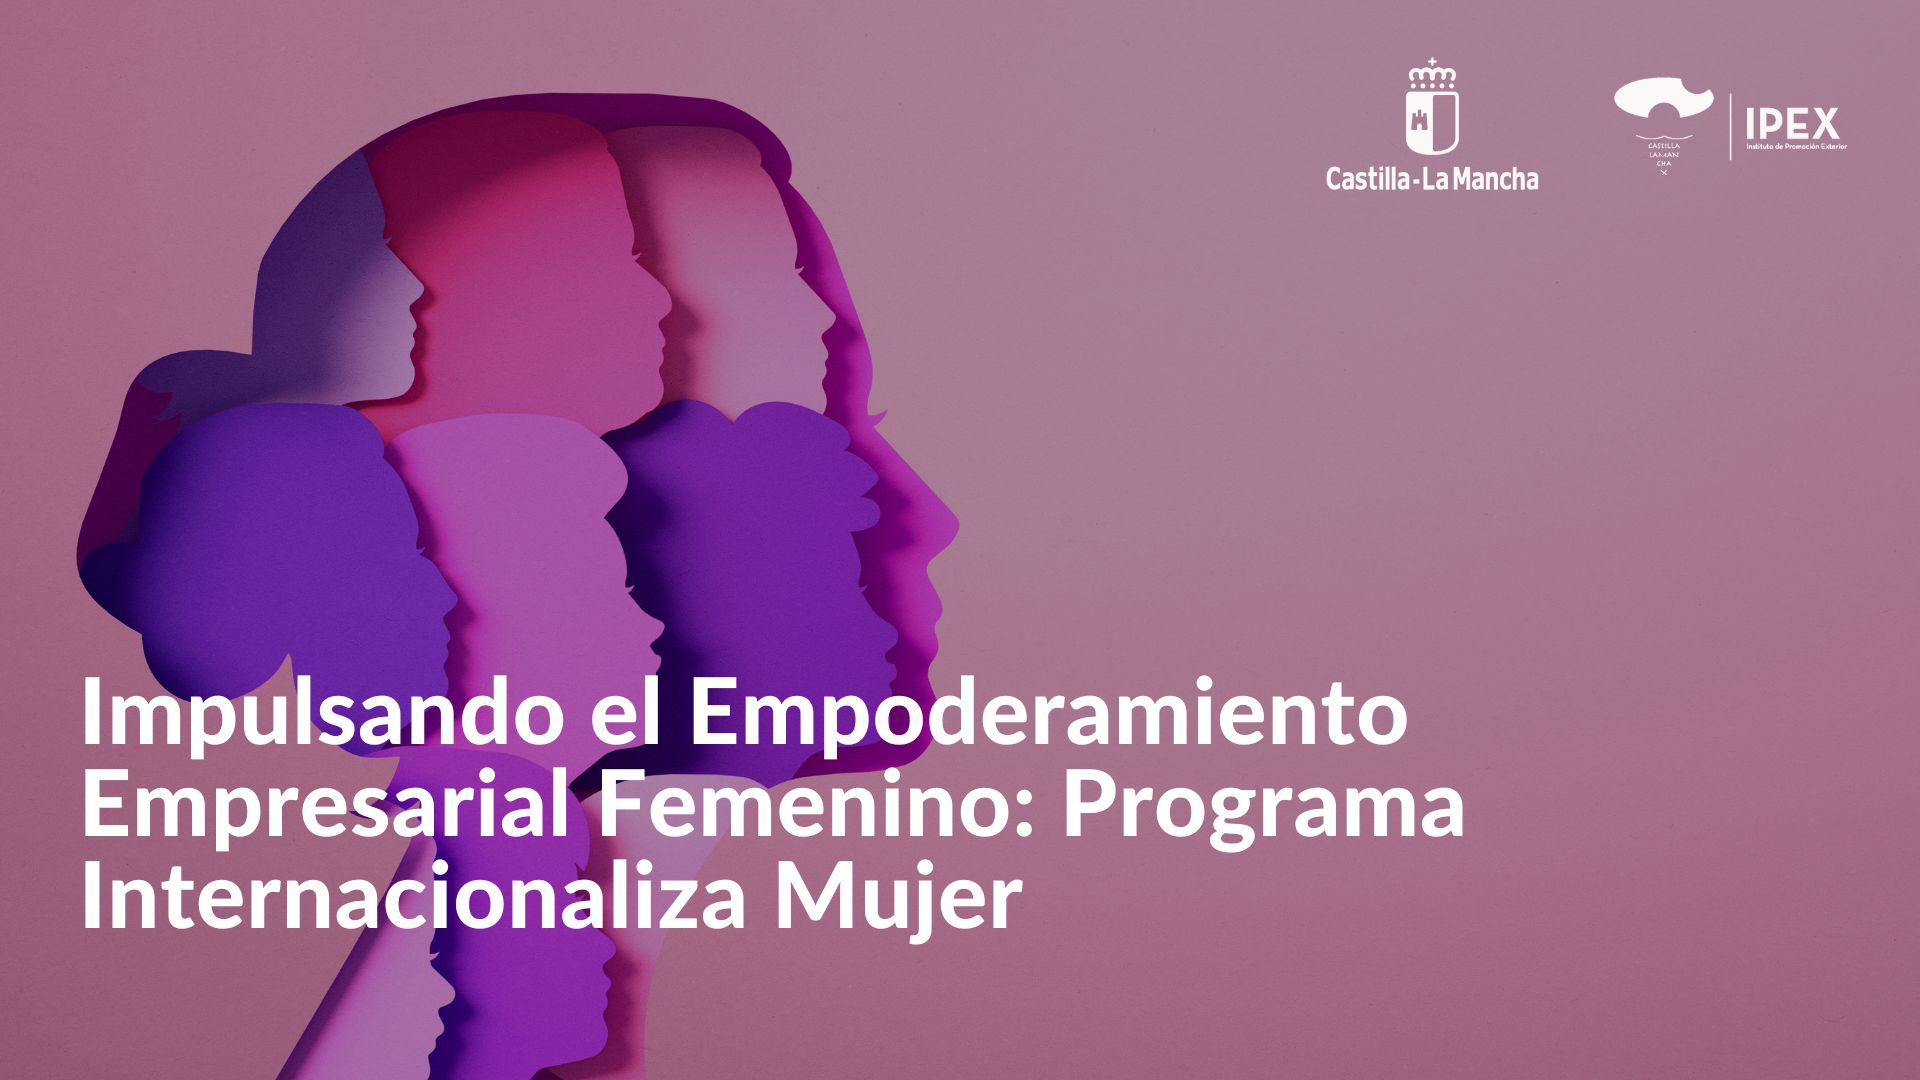 Impulsando el Empoderamiento Empresarial Femenino Programa Internacionaliza Mujer